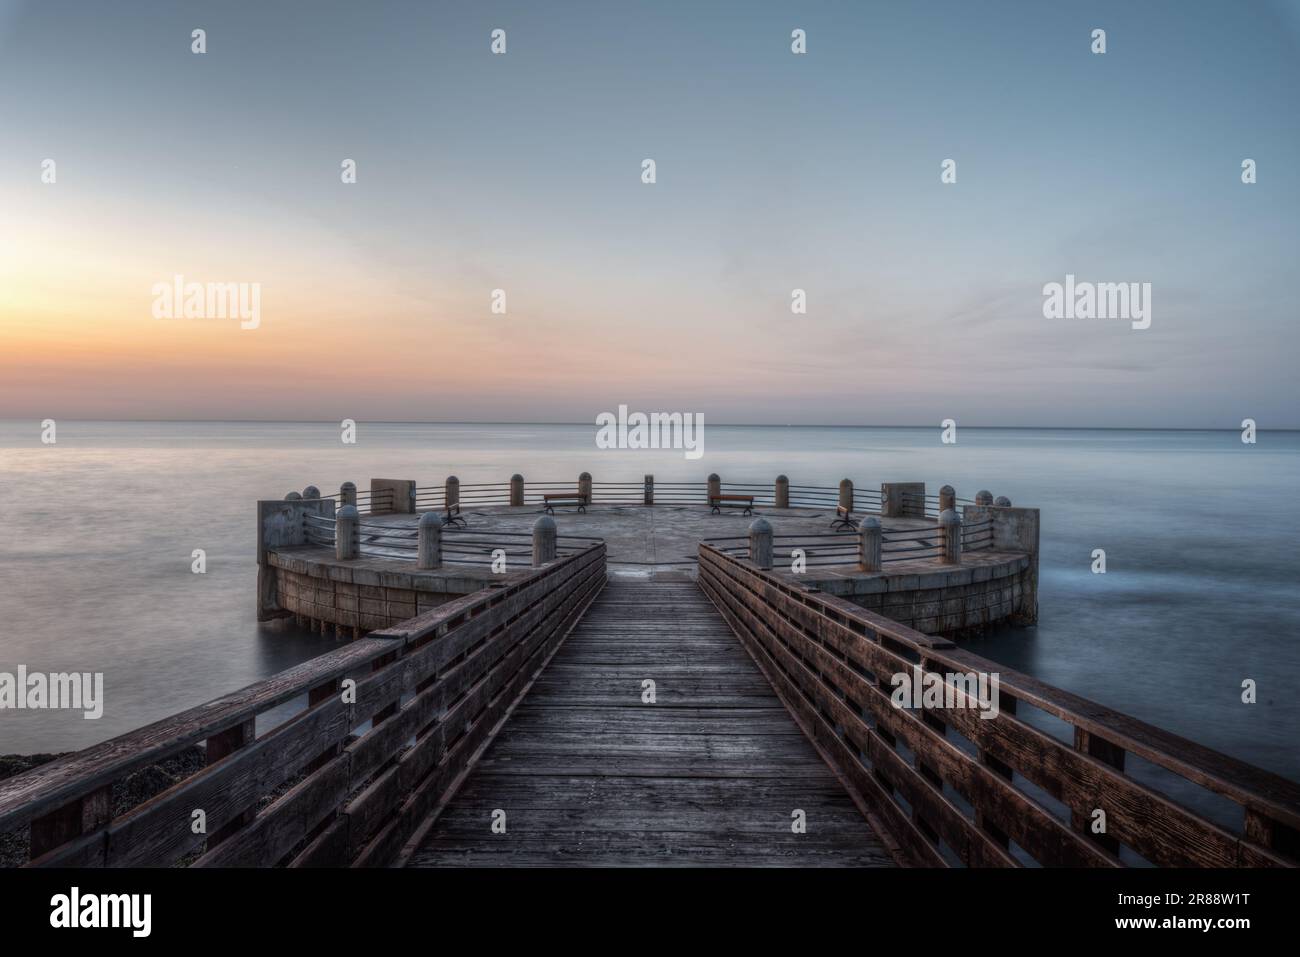 Mattina sul molo e la rotonda che si affaccia sul mare con gli splendidi colori dell'alba Foto Stock